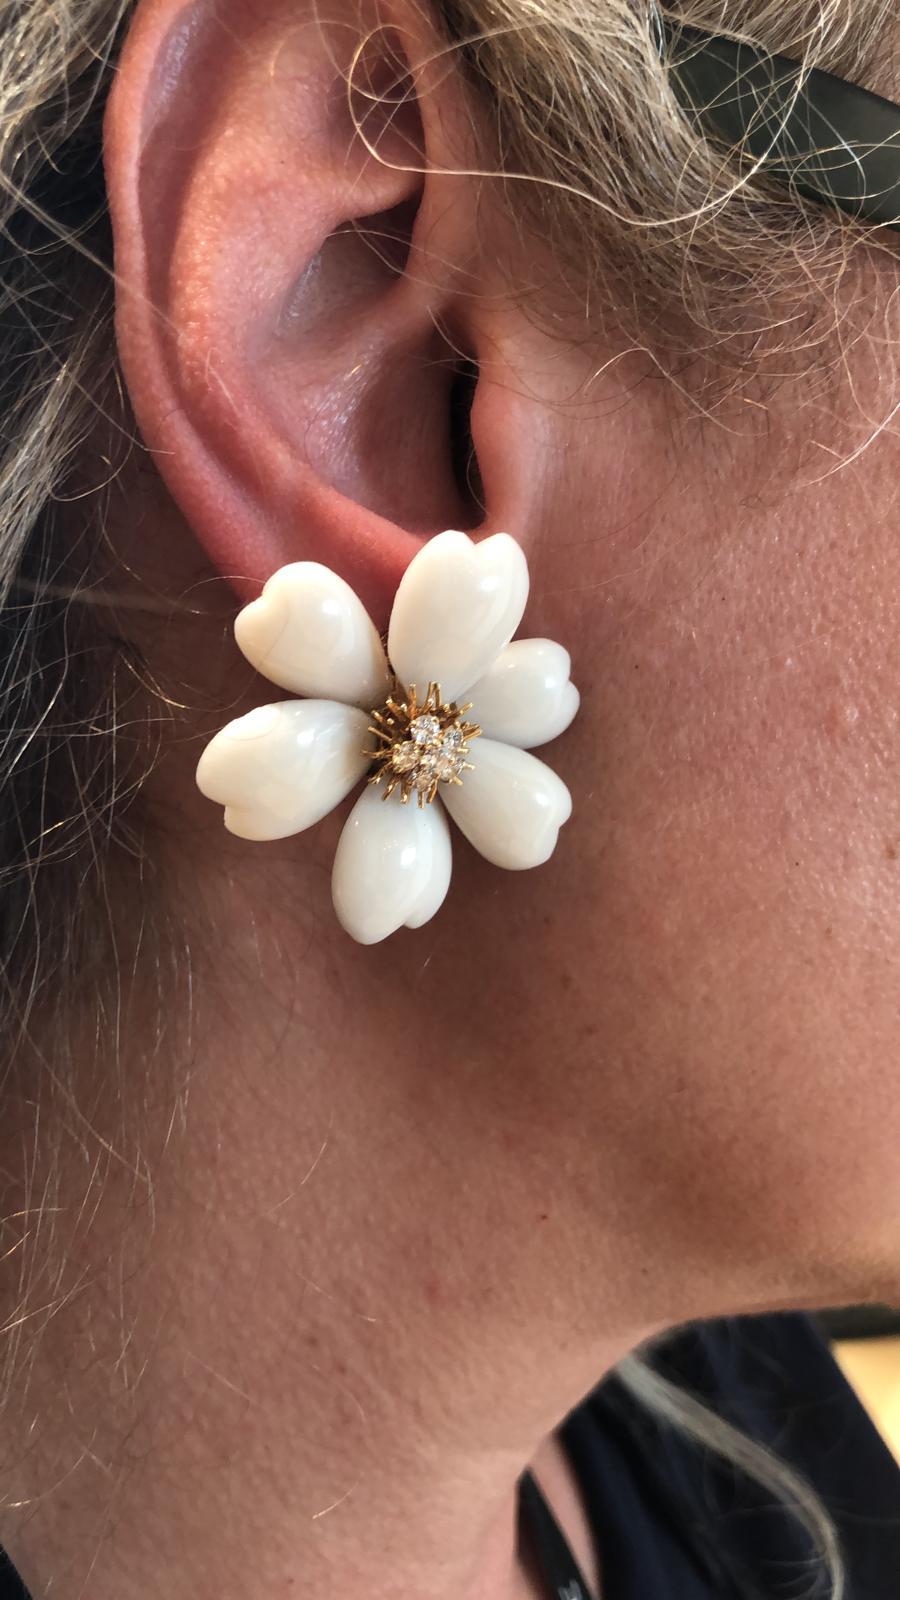 Les boucles d'oreilles iconiques Rose de Noel de Van Cleef & Arpels, chacune conçue comme une tête de fleur en corail avec des pistils en fil d'or jaune 18k entourant une grappe de diamants taille brillant.

Dimensions approximatives.  longueur 1